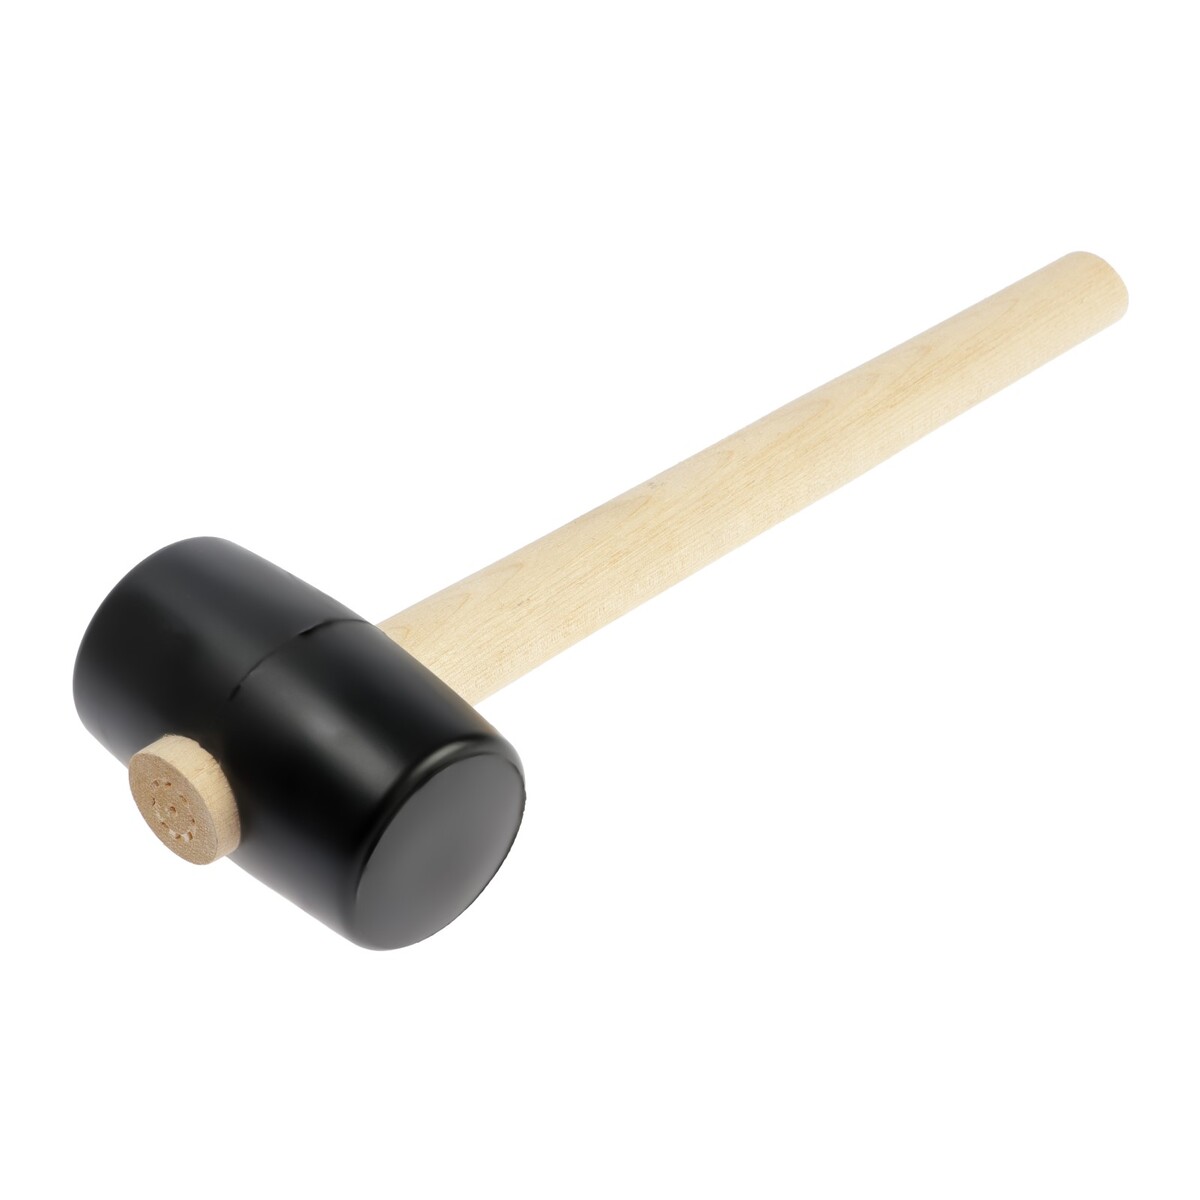 Киянка лом, деревянная рукоятка, черная резина, 55 мм, 300 г киянка тундра деревянная рукоятка черная резина 50 мм 340 г